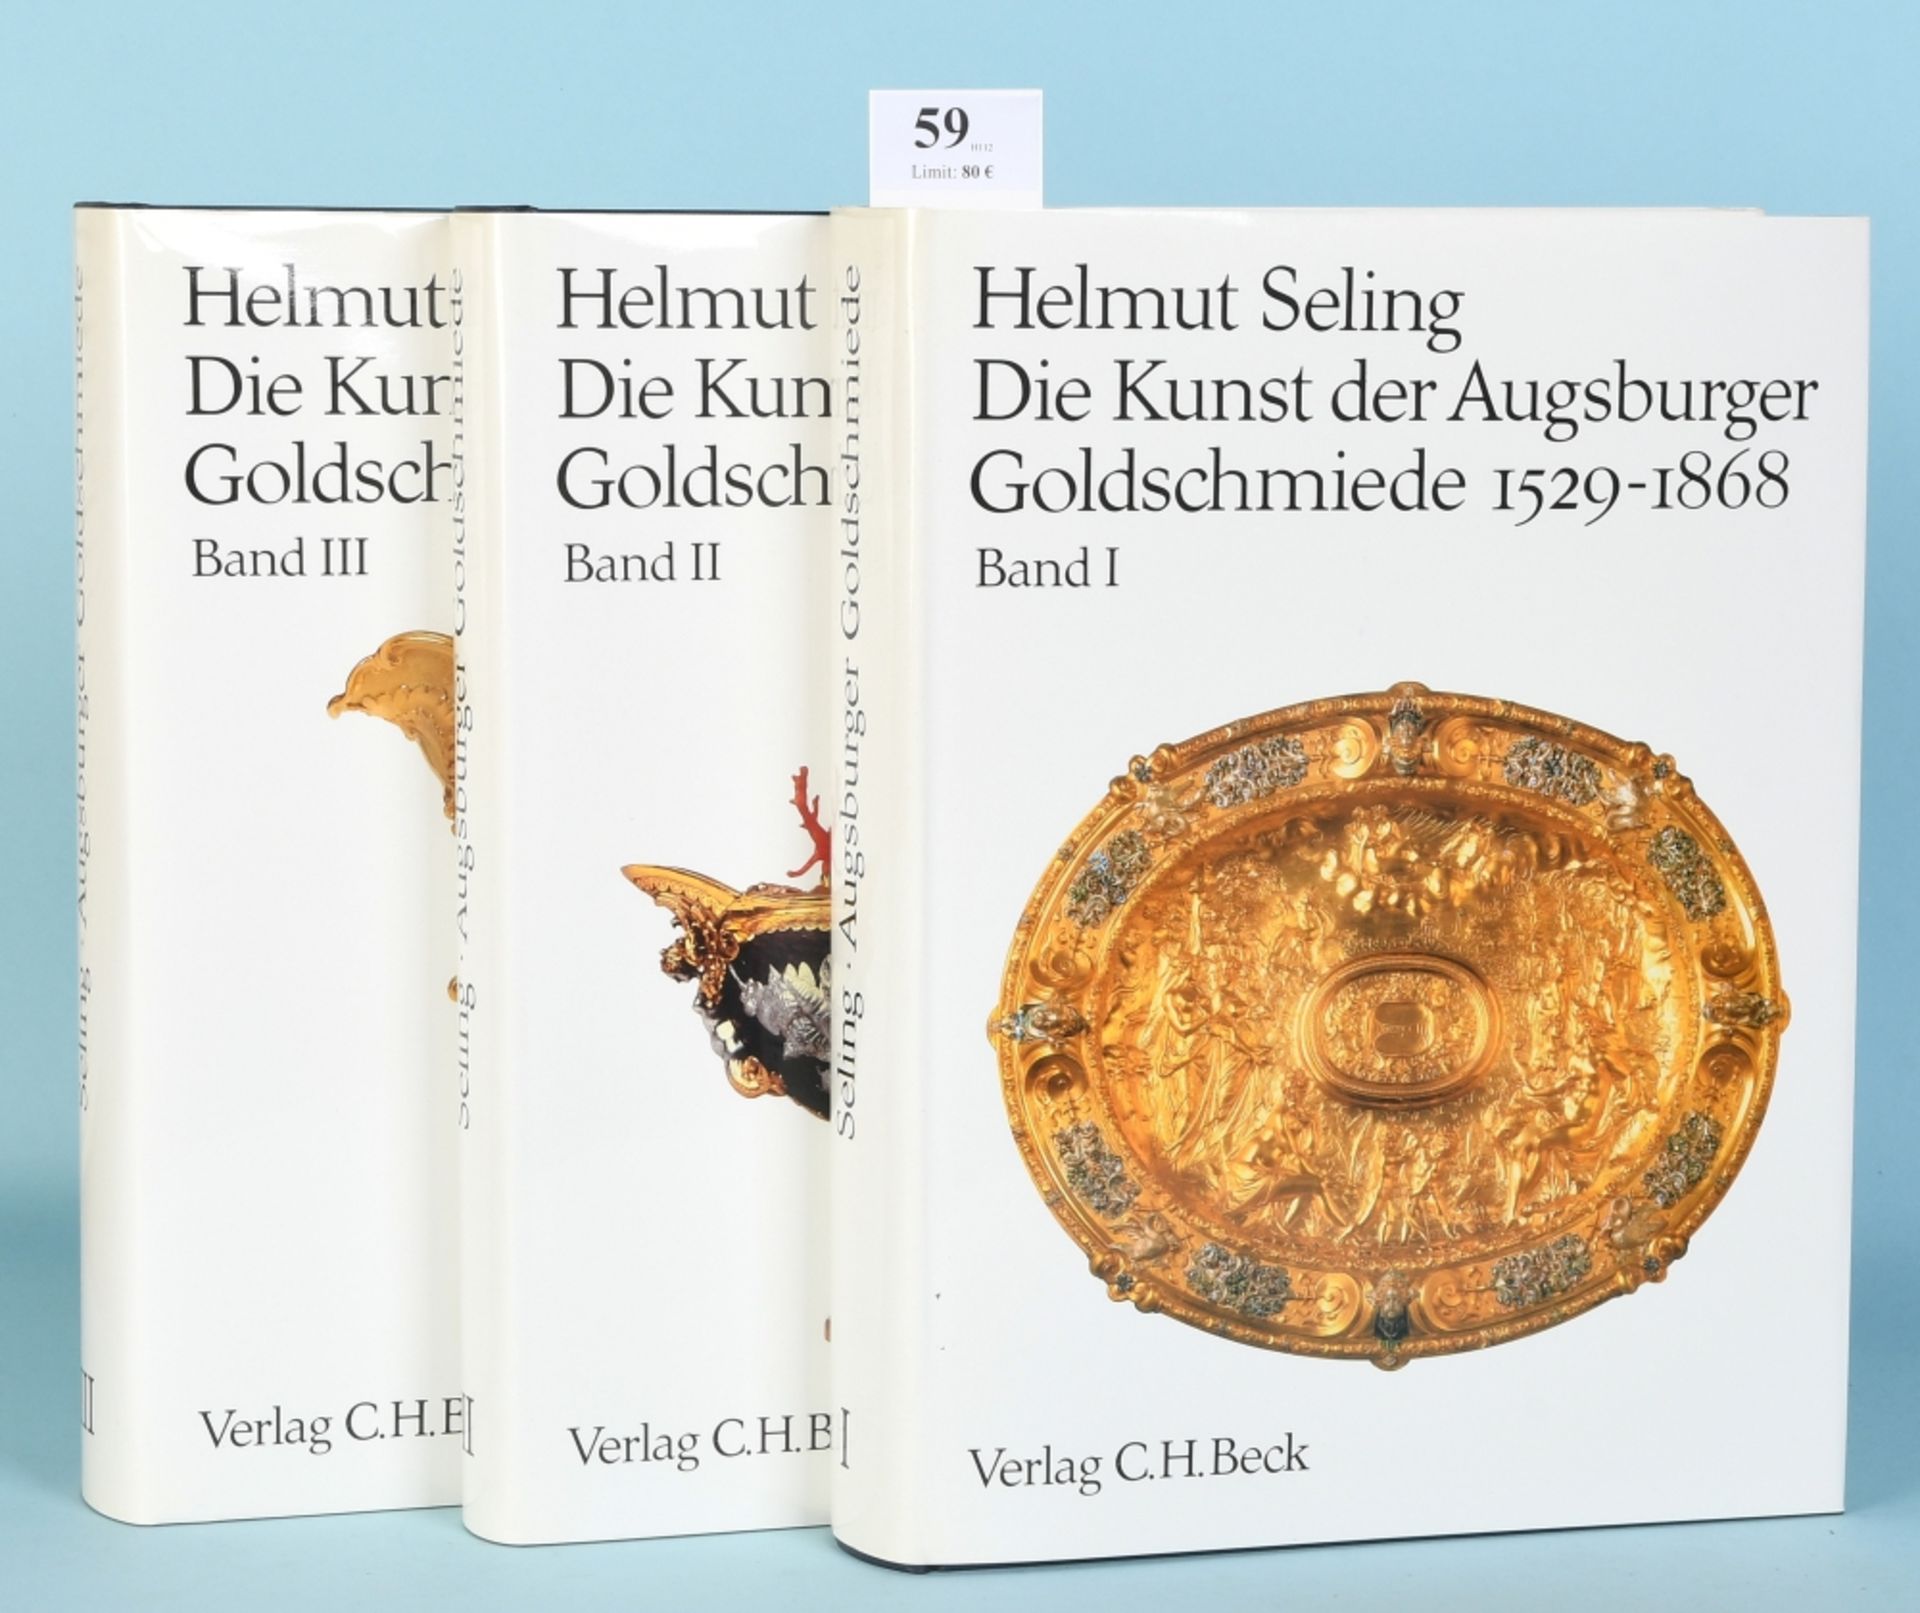 Seling, Helmut "Die Kunst der Augsburger Goldschmiede 1529-1868"